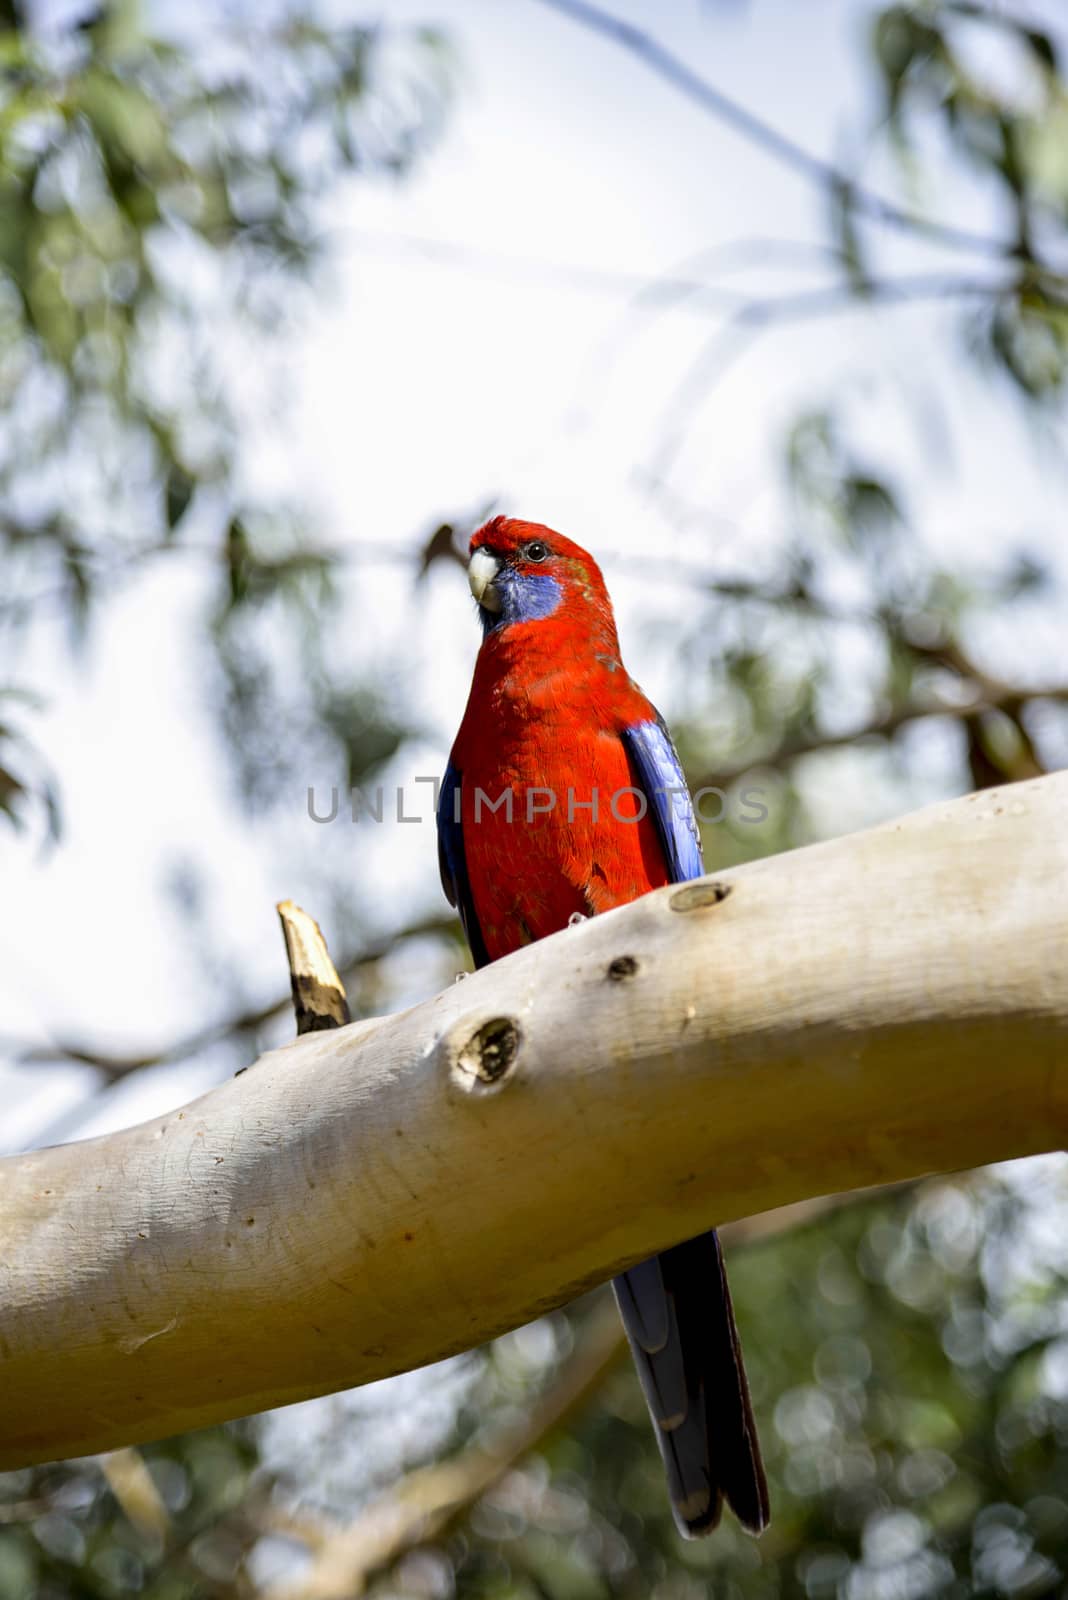 Red parot on the tree2 by gjeerawut